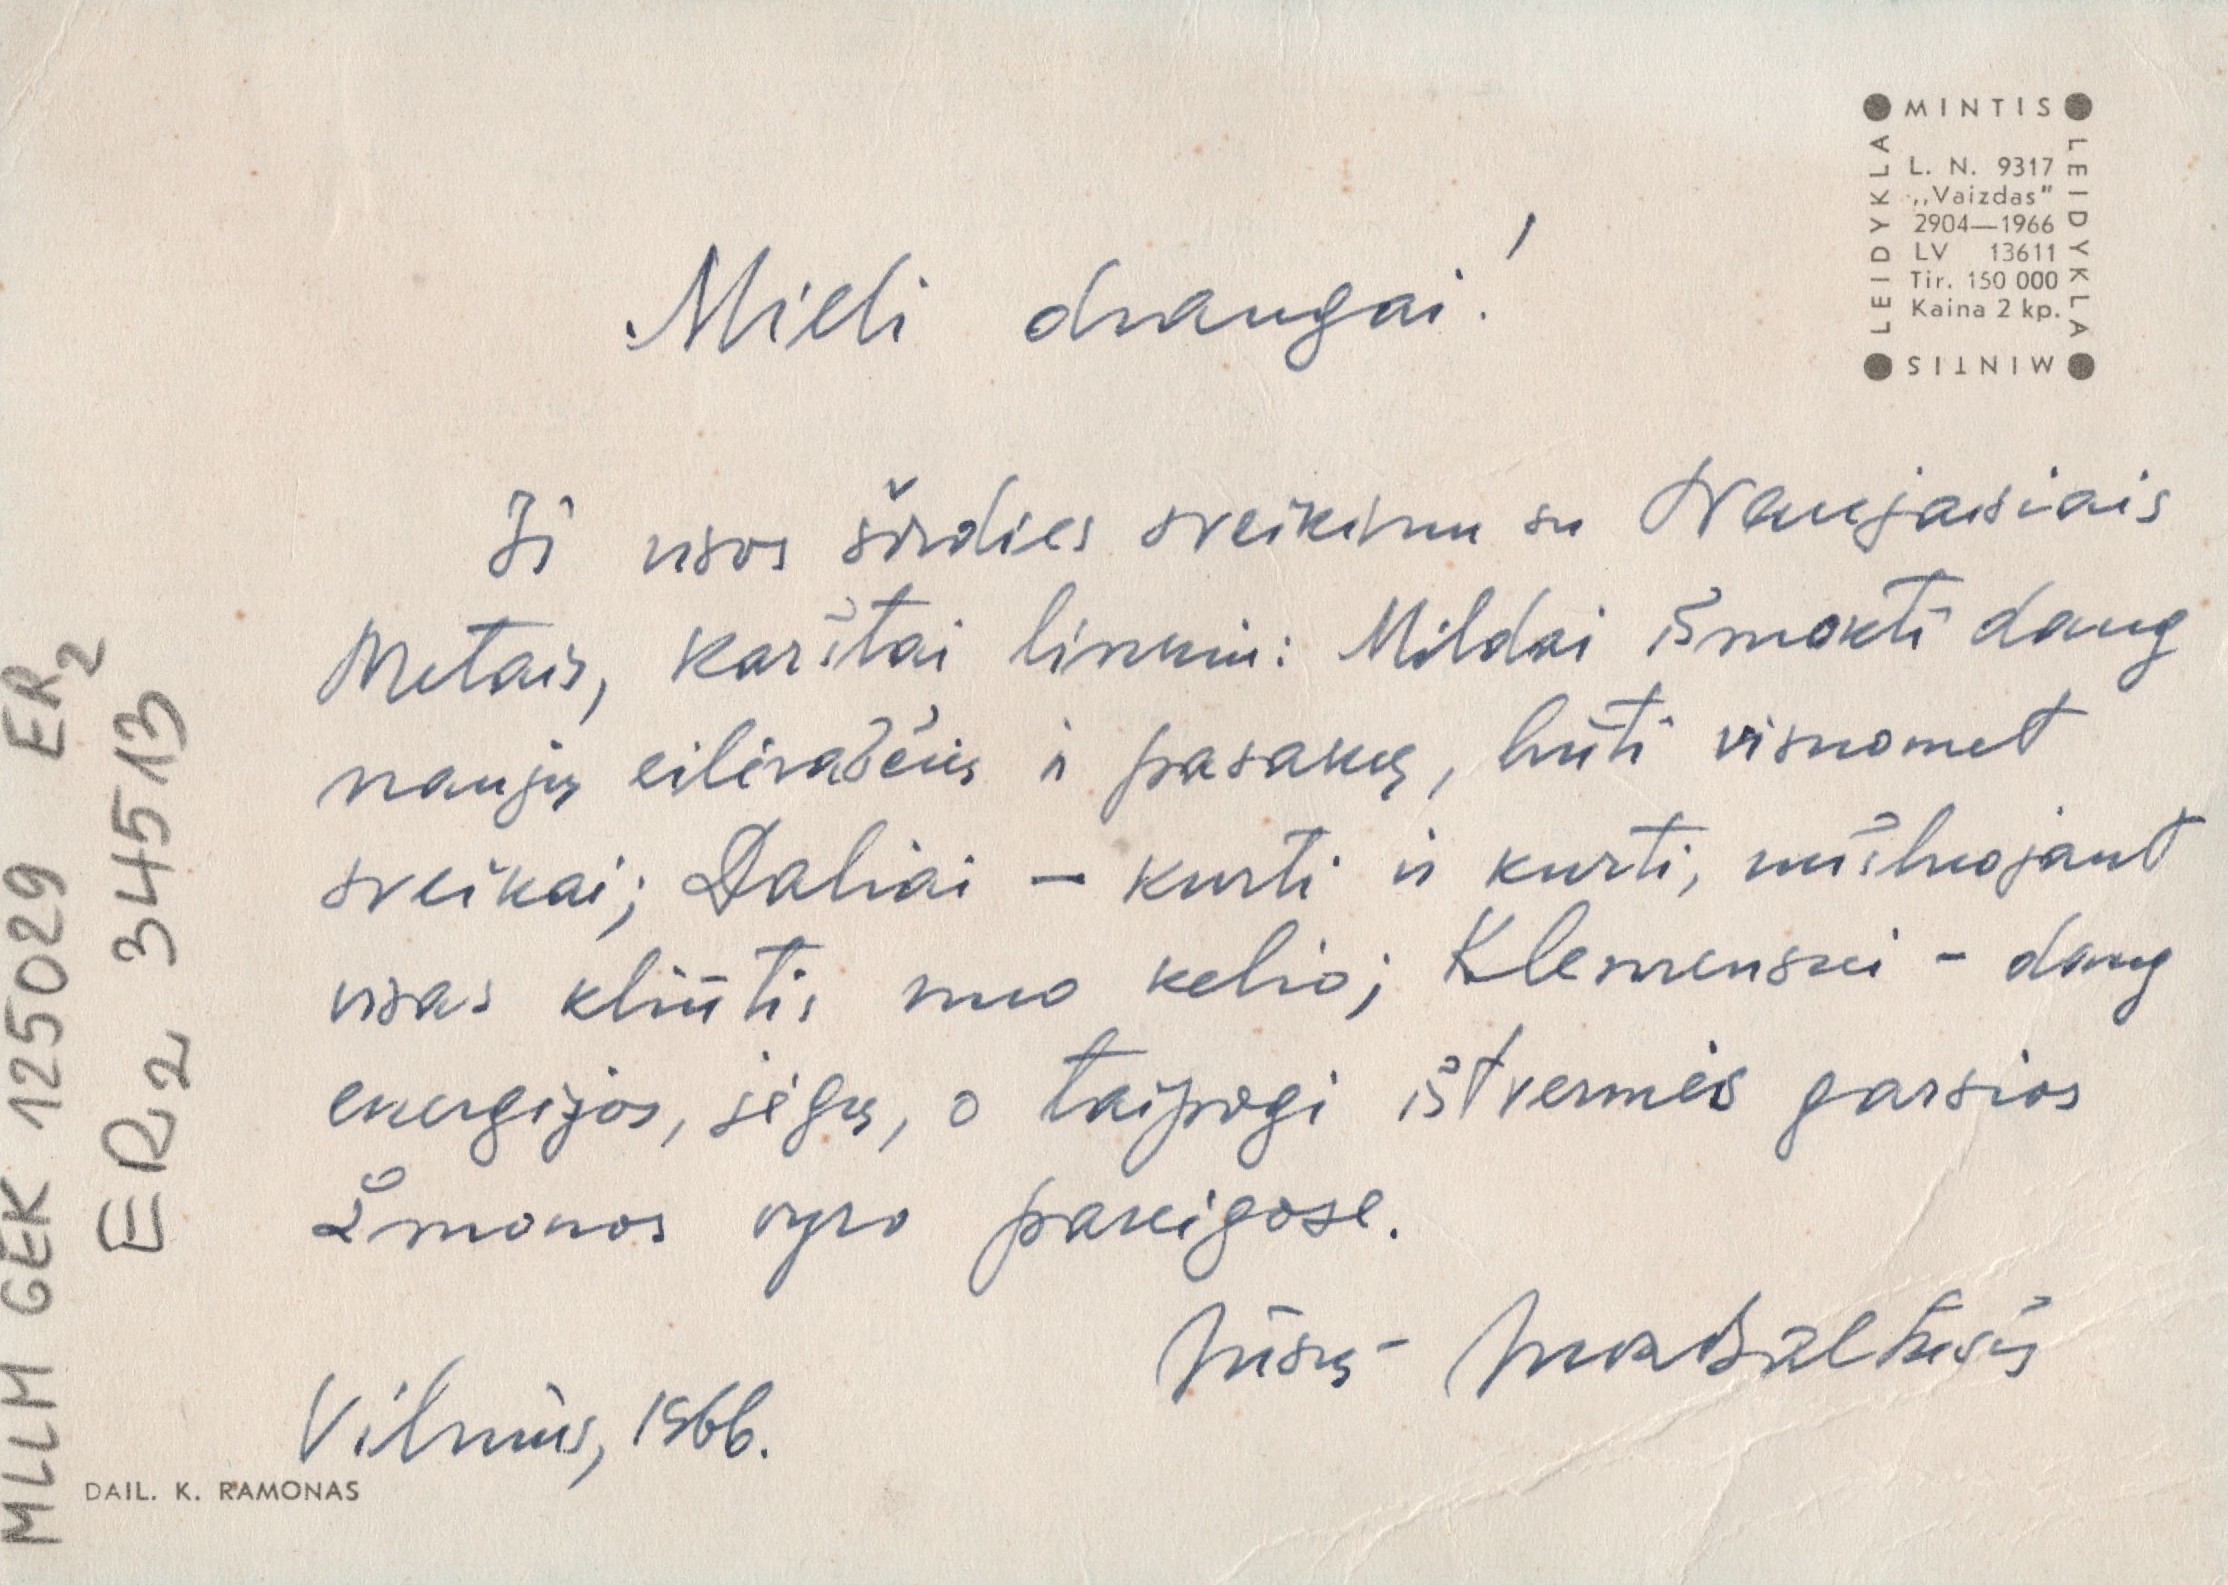 J. Baltušio laiškas D. Urnevičiūtei. 1966 m. MLLM 125029